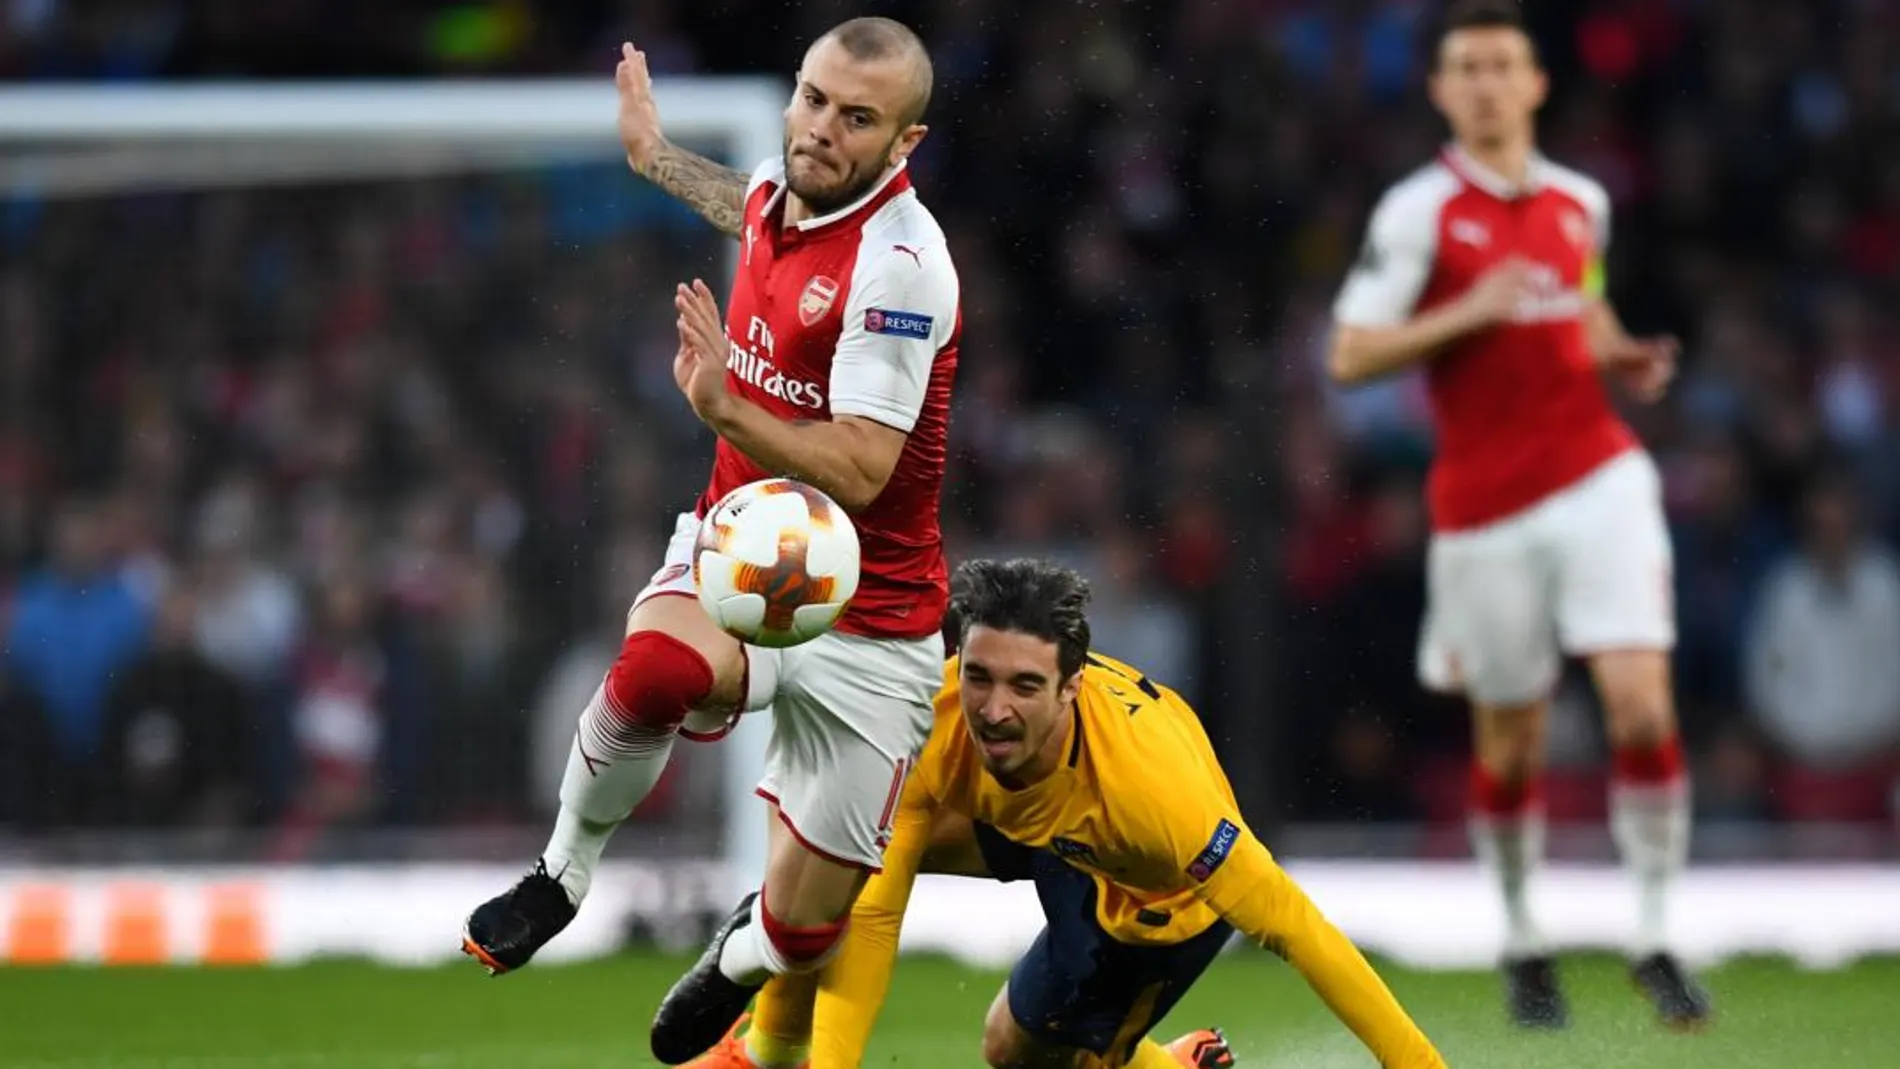 El jugador del Atlético Vrsaljko lucha por un balón con Wilshere del Arsenal en el Emirates / Reuters